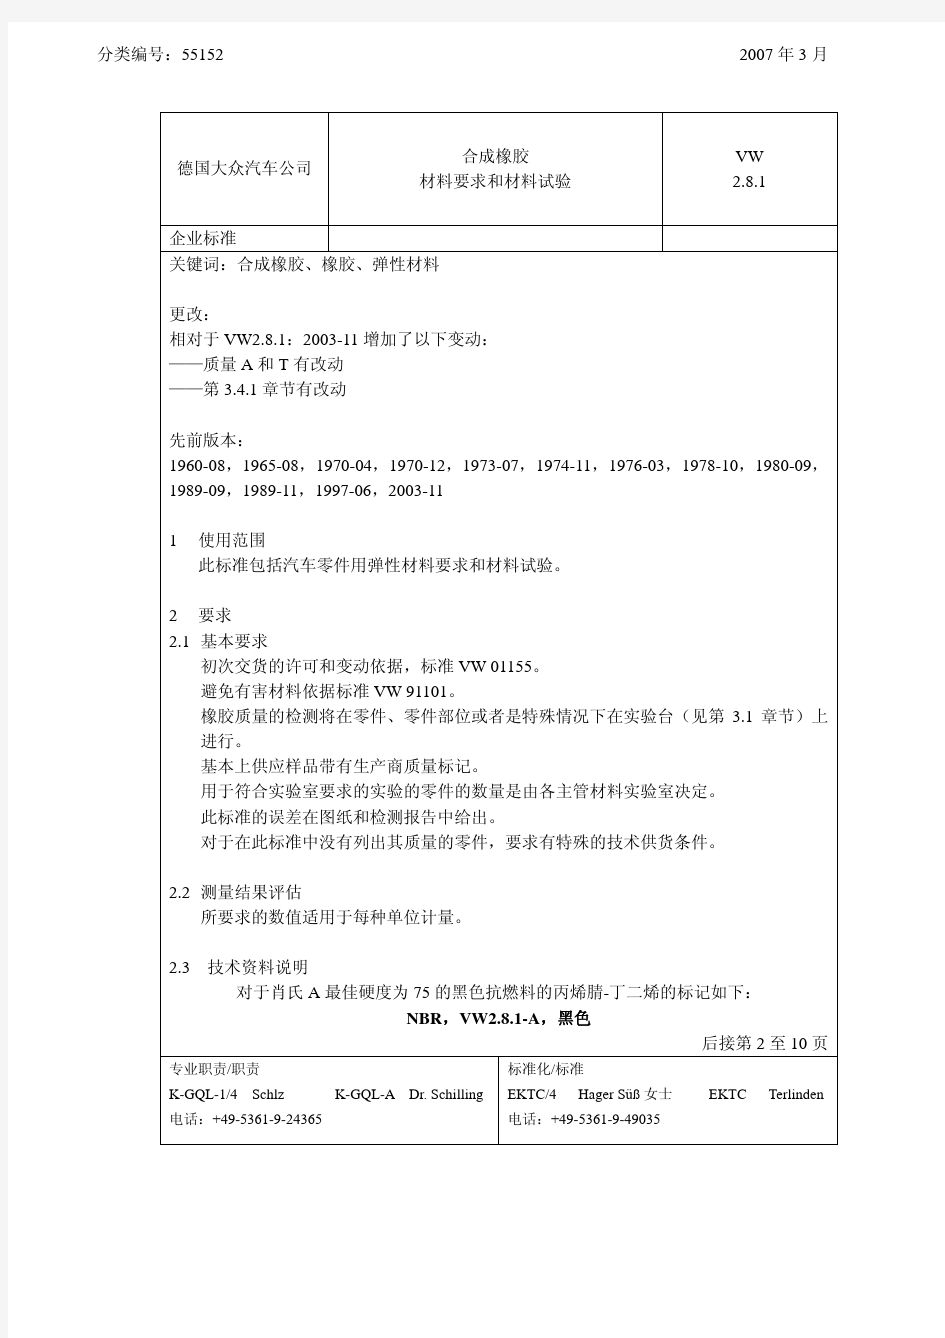 VW2.8.1中文版